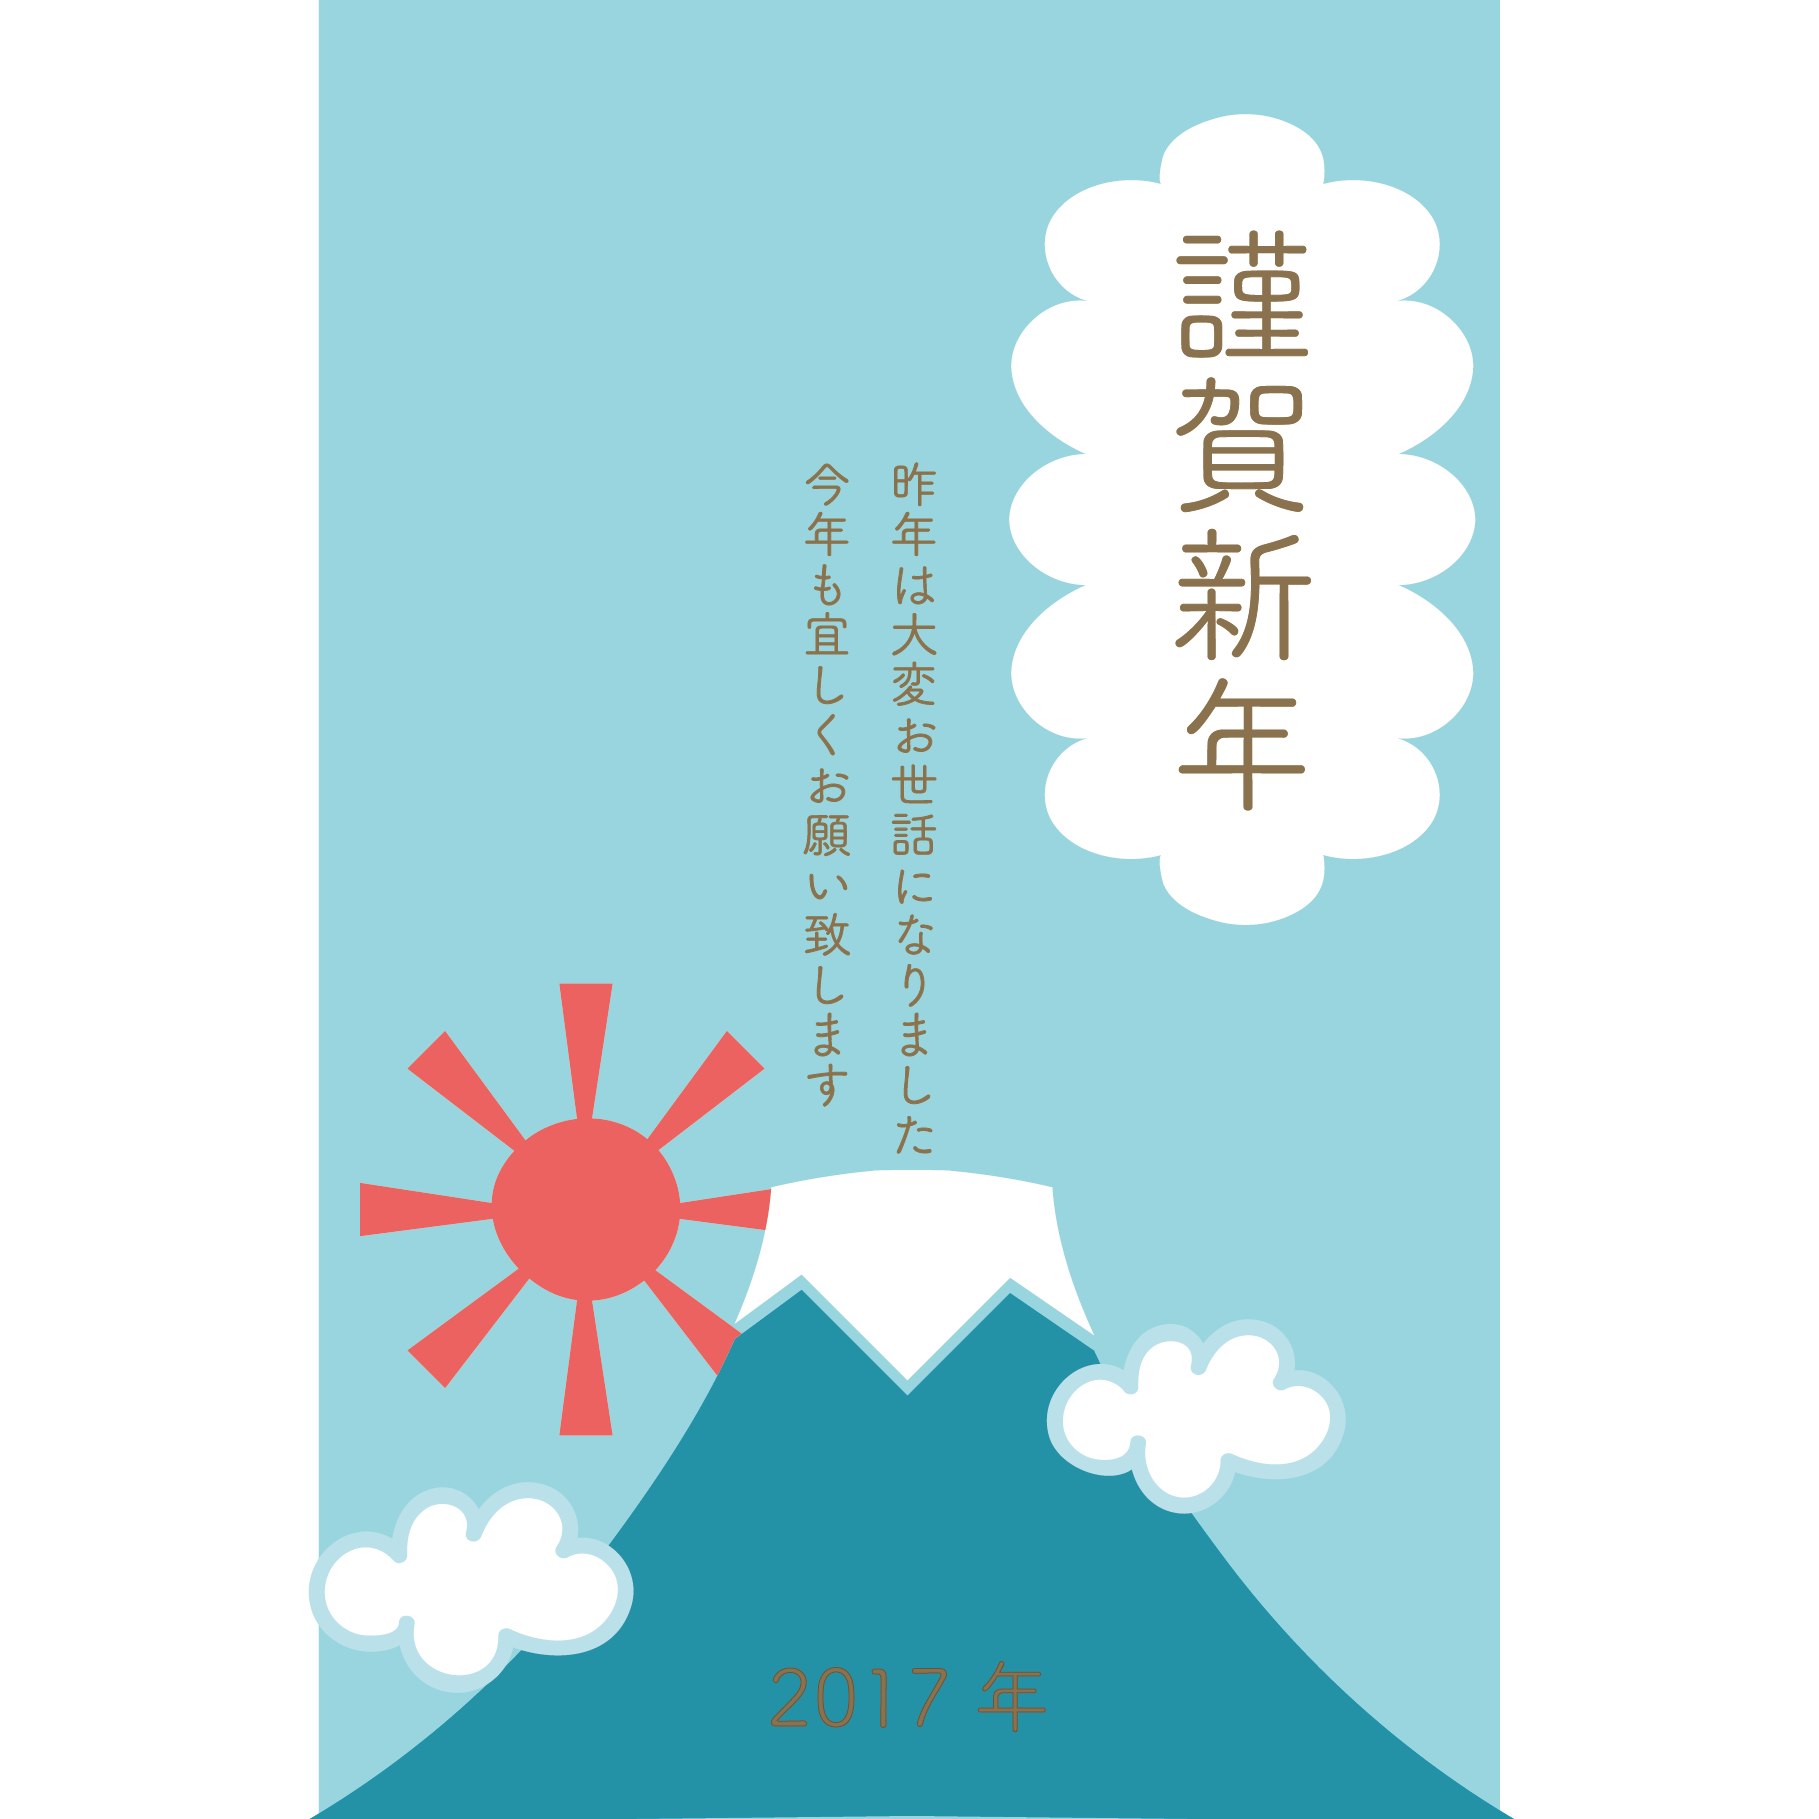 富士山 2017年 酉年 新年の年賀状に使えるイラスト集 フリー素材 無料 平成29年 Naver まとめ